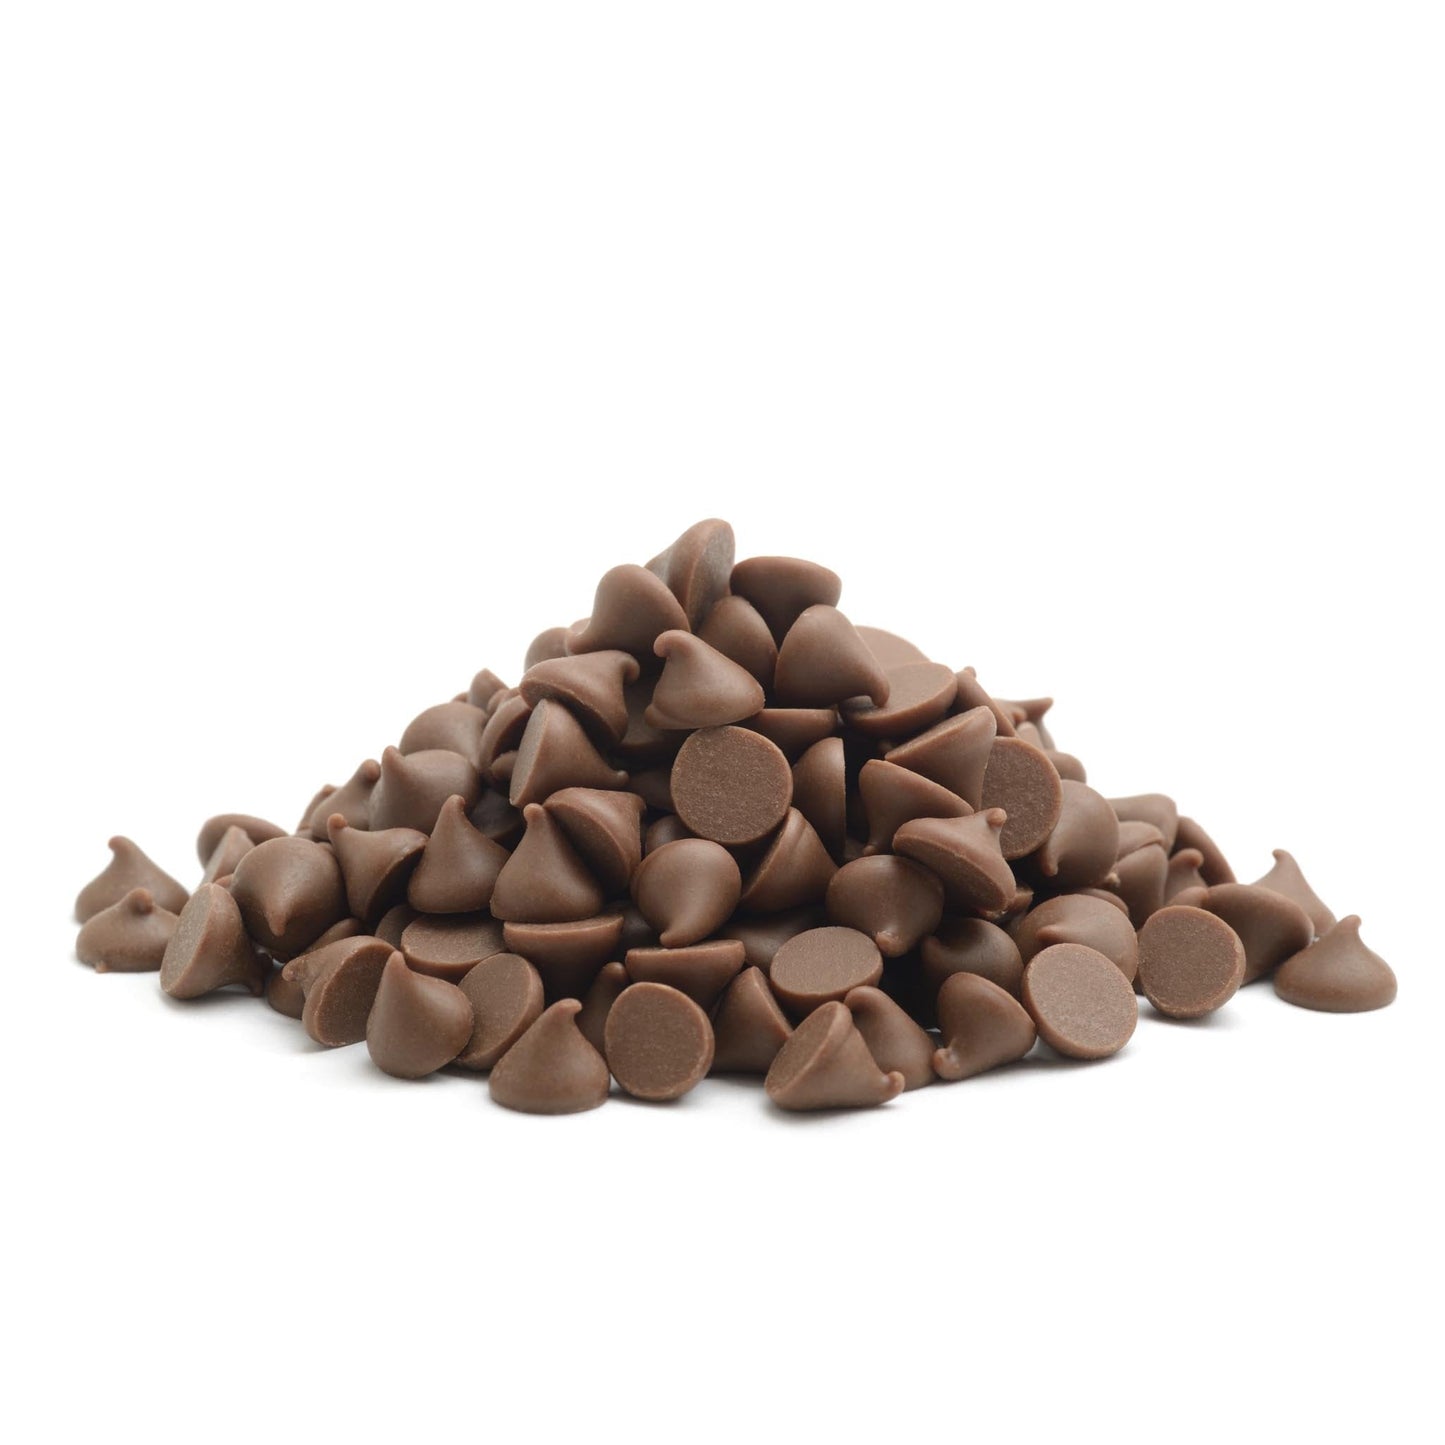 25 LB Cocoa Drops - 4000 Count (Compound Chocolate)